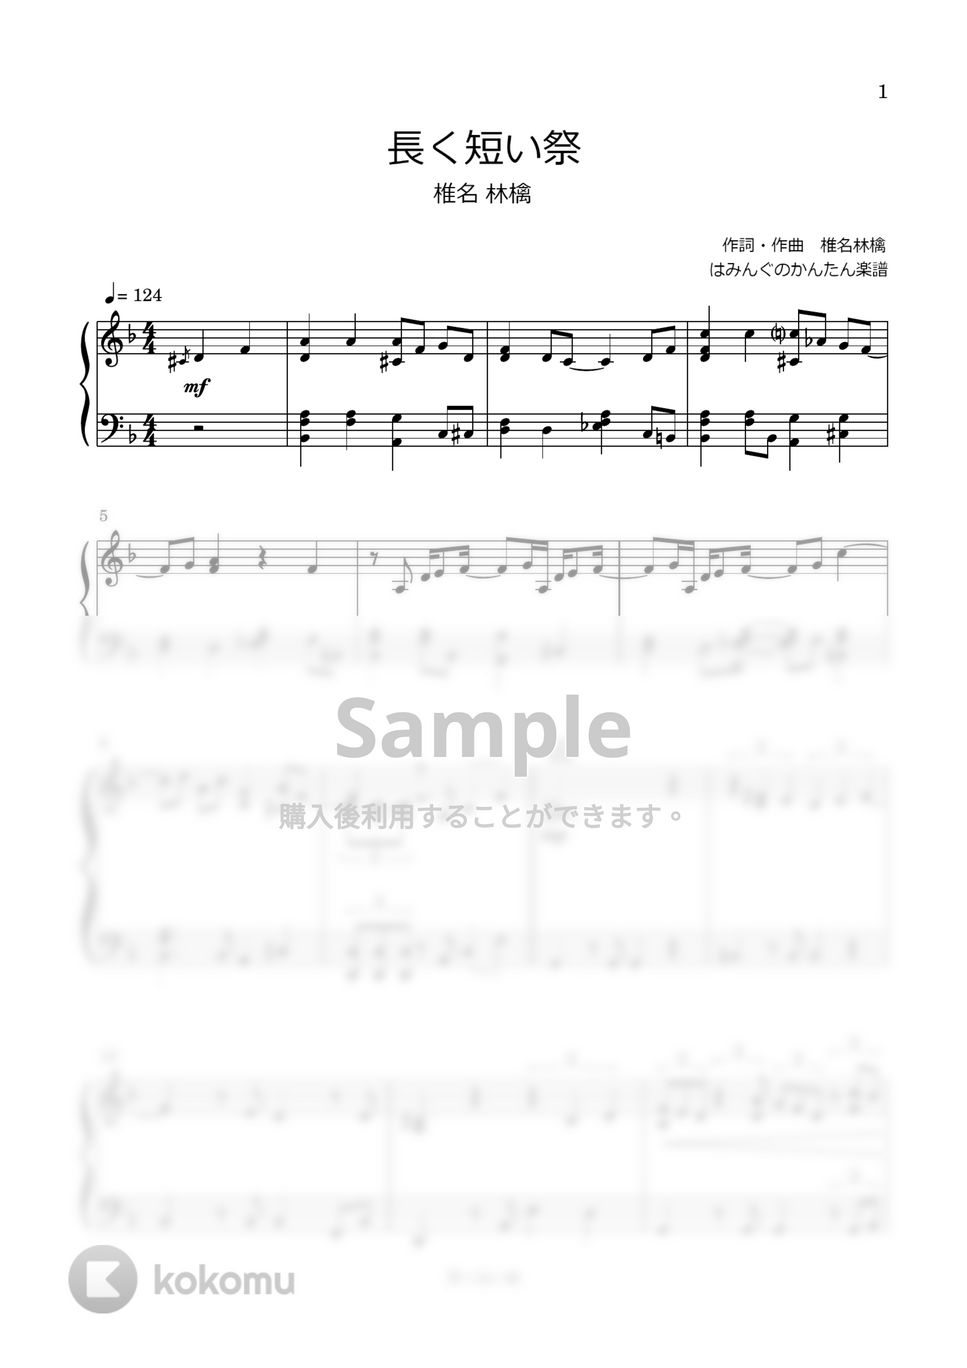 椎名林檎 - 長く短い祭 by はみんぐのかんたん楽譜